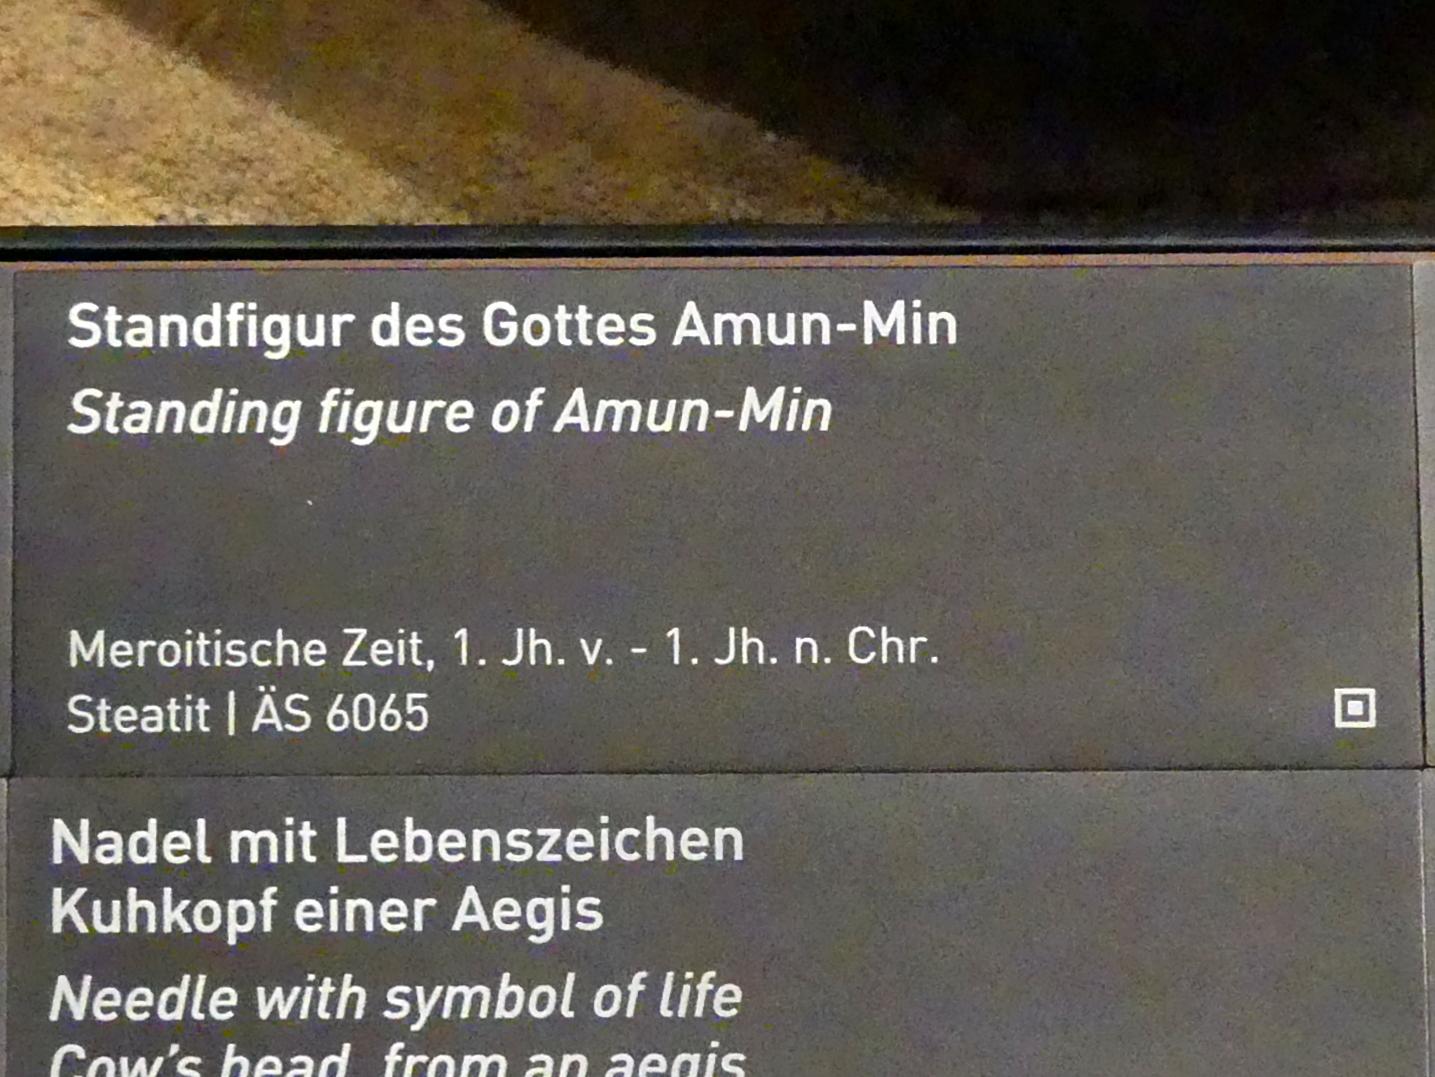 Standfigur des Gottes Amun-Min, Meroitische Zeit, 200 v. Chr. - 500 n. Chr., 100 v. Chr. - 100 n. Chr., Bild 2/2